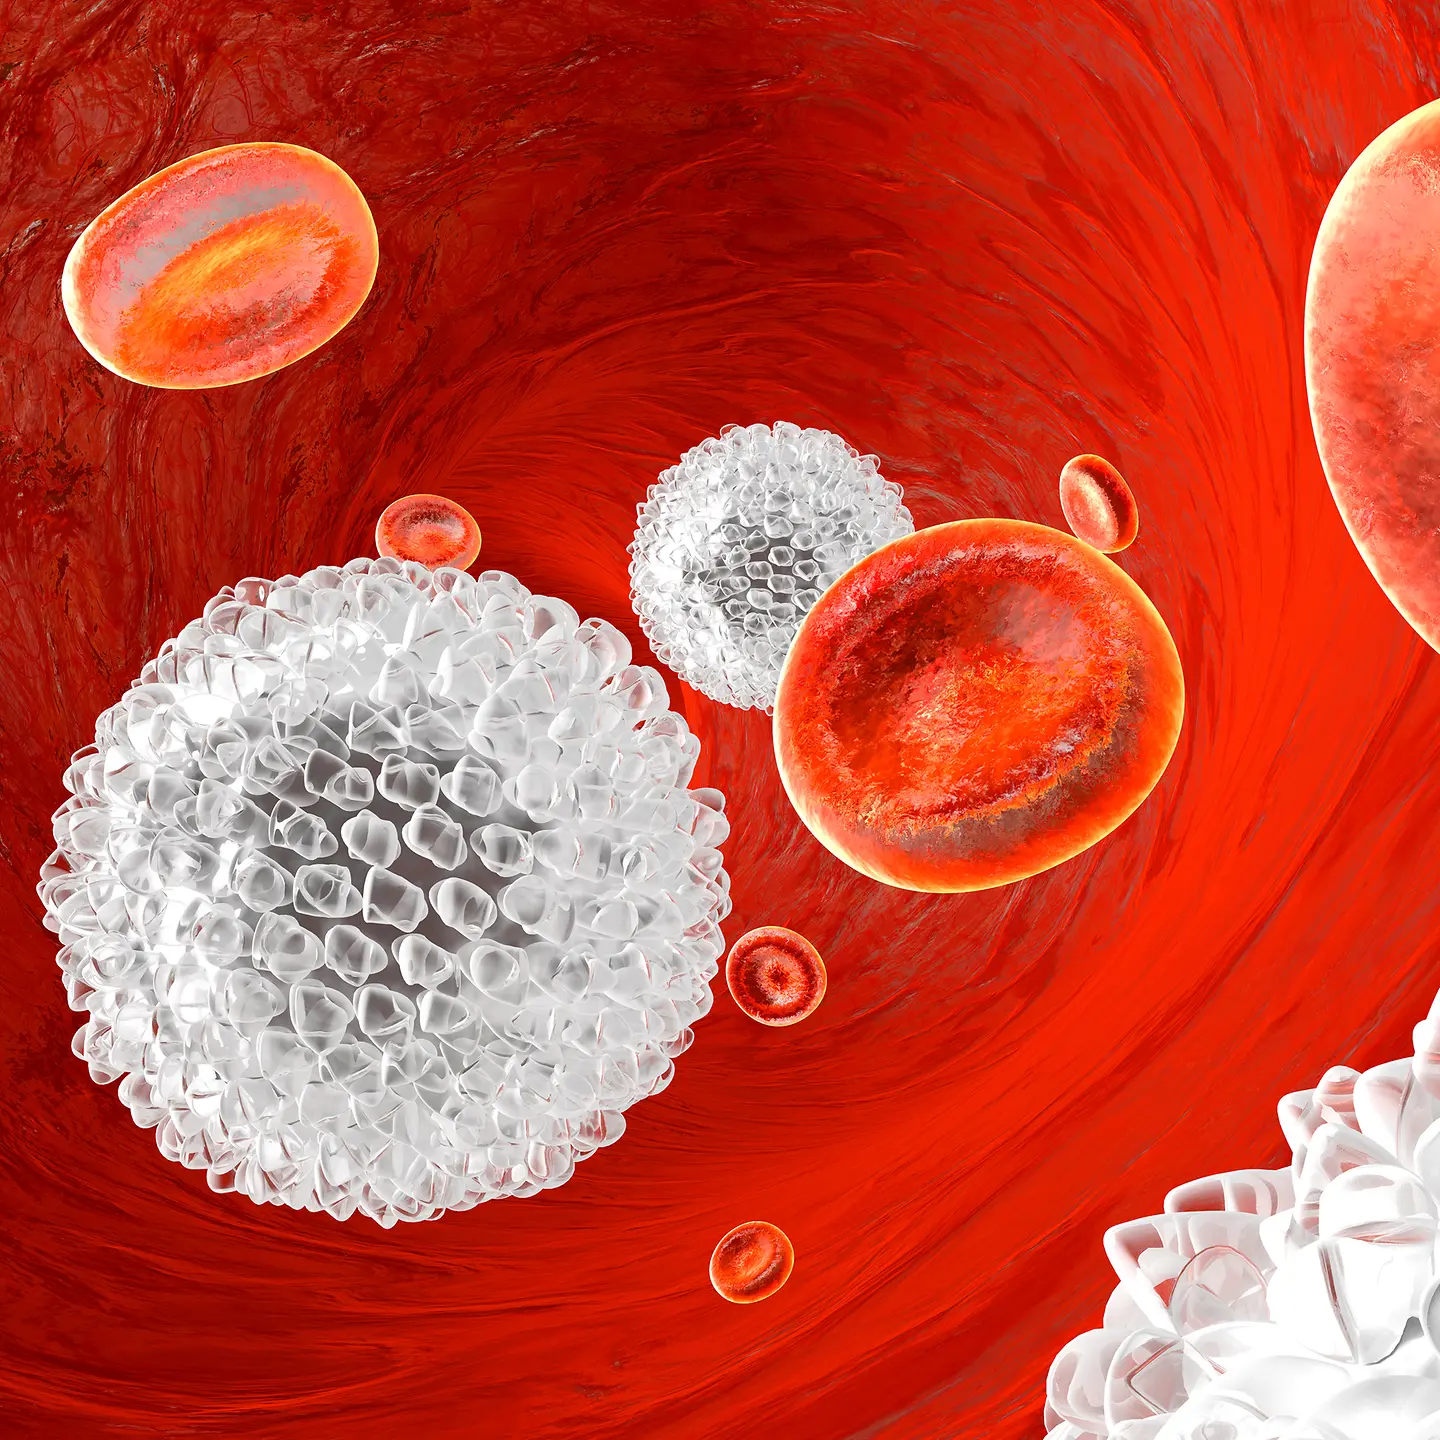 Stilisierte Darstellung von weißen und roten Blutkörperchen